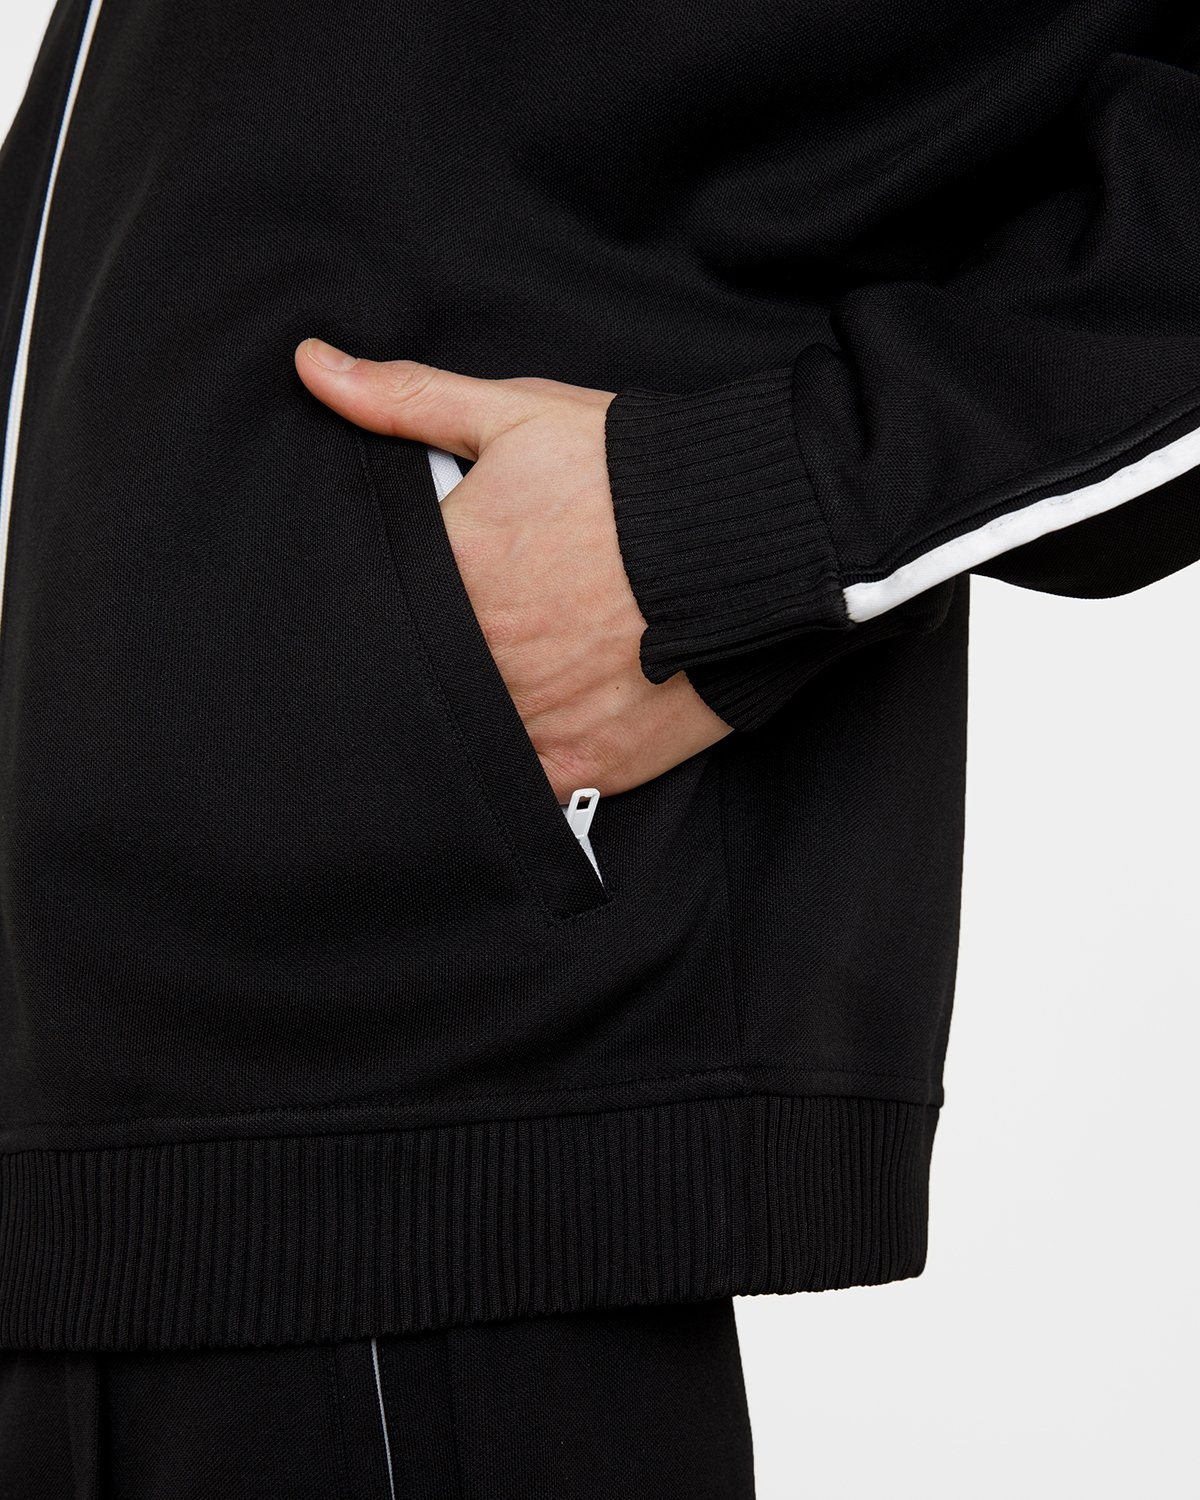 Maison Margiela – Track Jacket - Outerwear - Black - Image 10